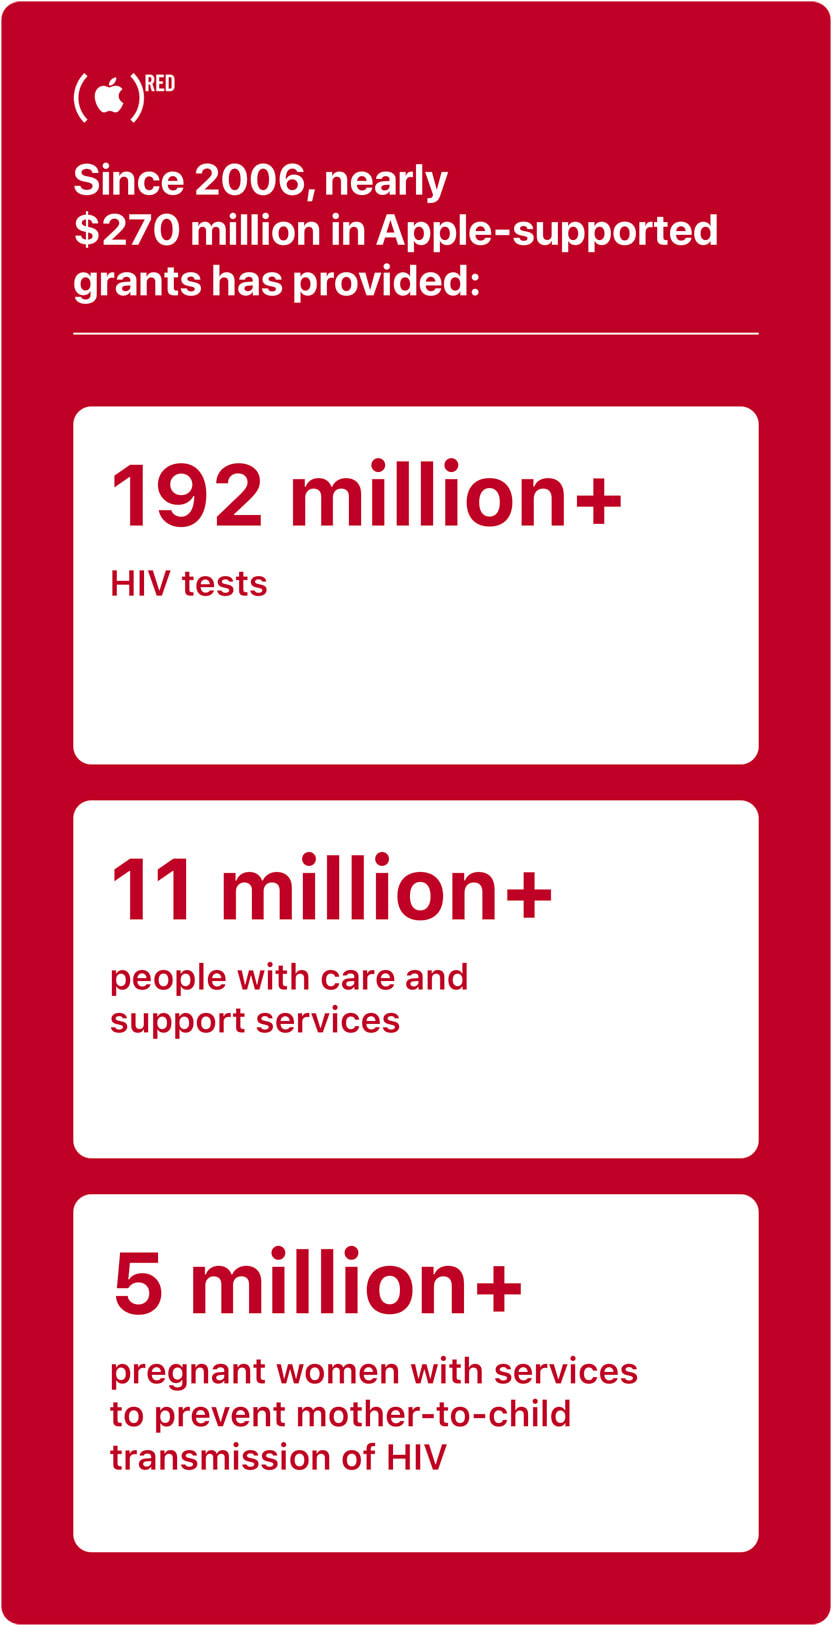 2006 年以来，Apple 所支援的捐款已经为超过 1,100 万人提供护理和支援服务，协助进行超过 1.92 亿次 HIV 检测，并服务 500 万多名孕妇，防止母婴垂直感染 HIV 病毒。